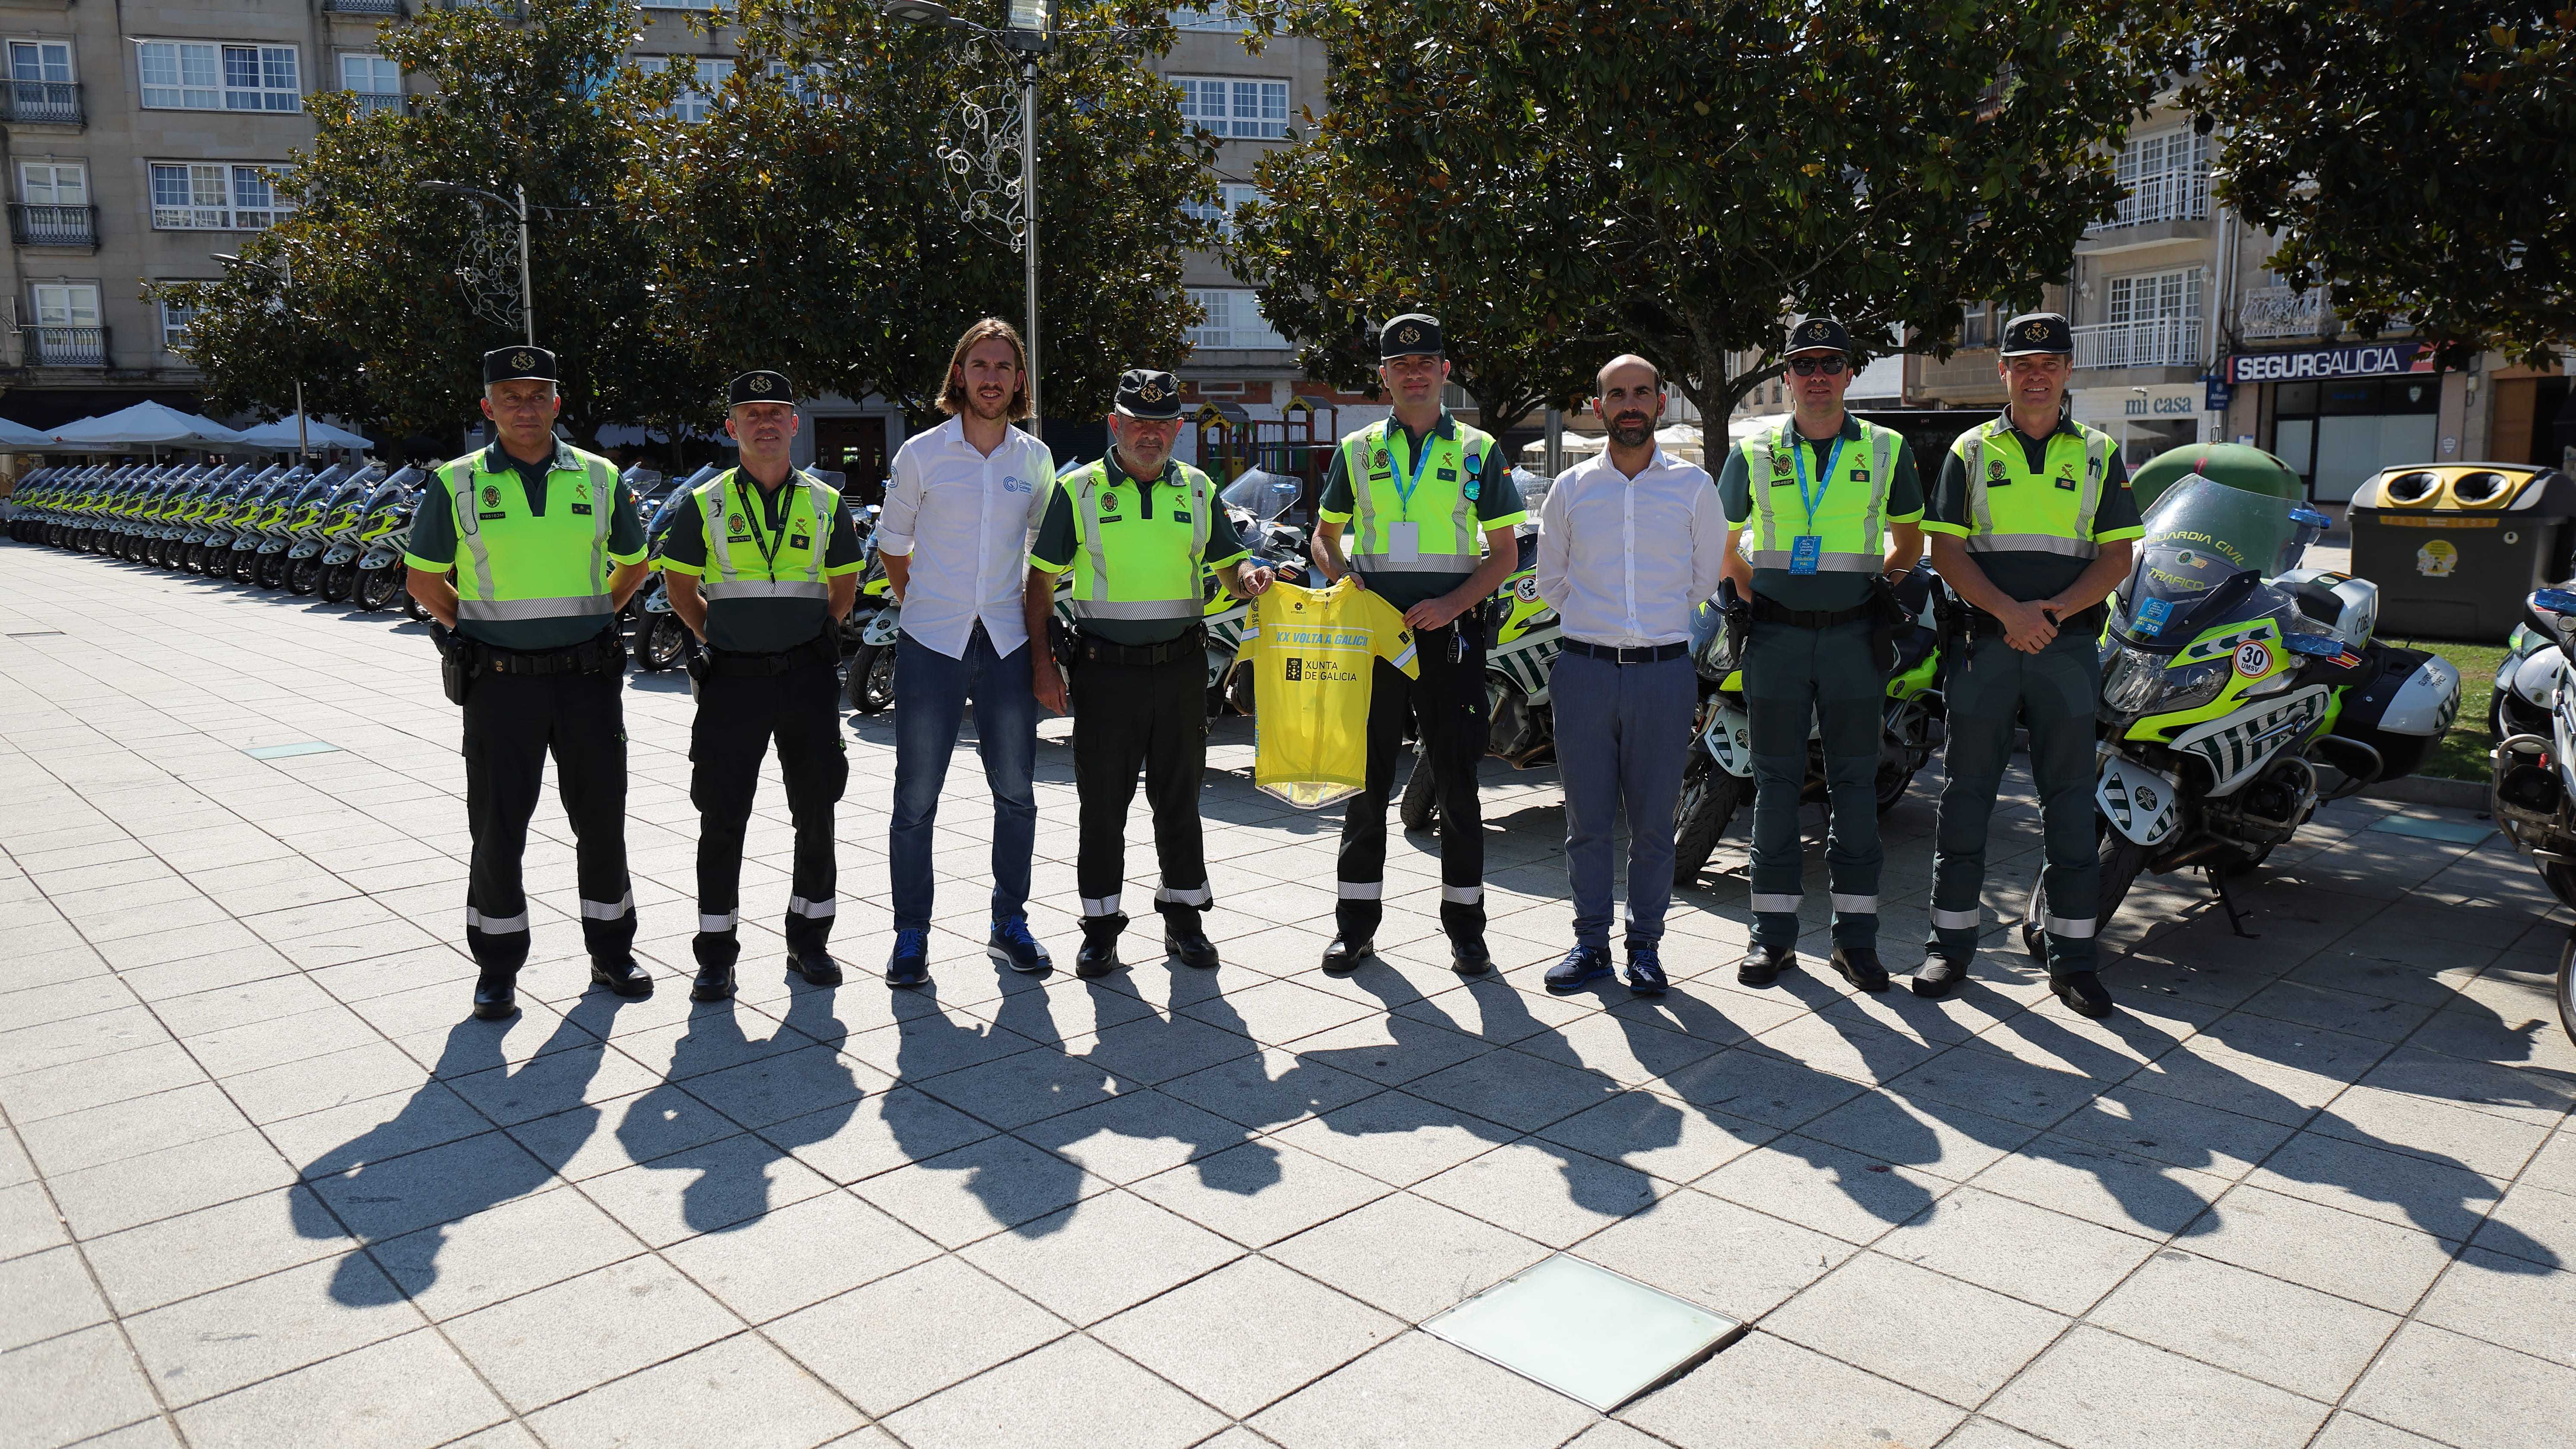 Agradecemento á Garda Civil de Tráfico polo labor desempeñado na XX Volta Ciclista a Galicia